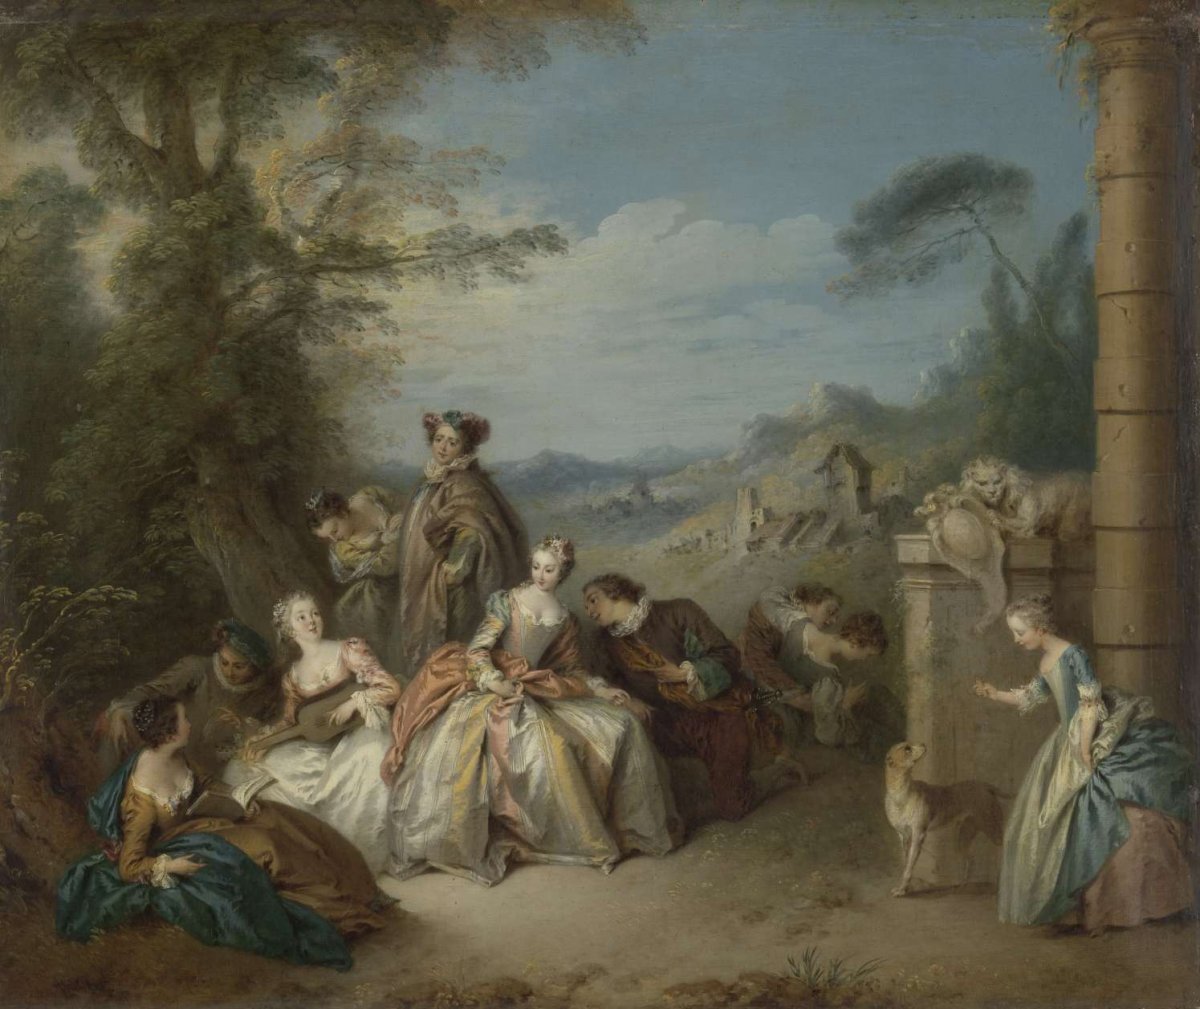 Fête galante in a Landscape, Jean Baptiste François Pater, c. 1730 - c. 1735